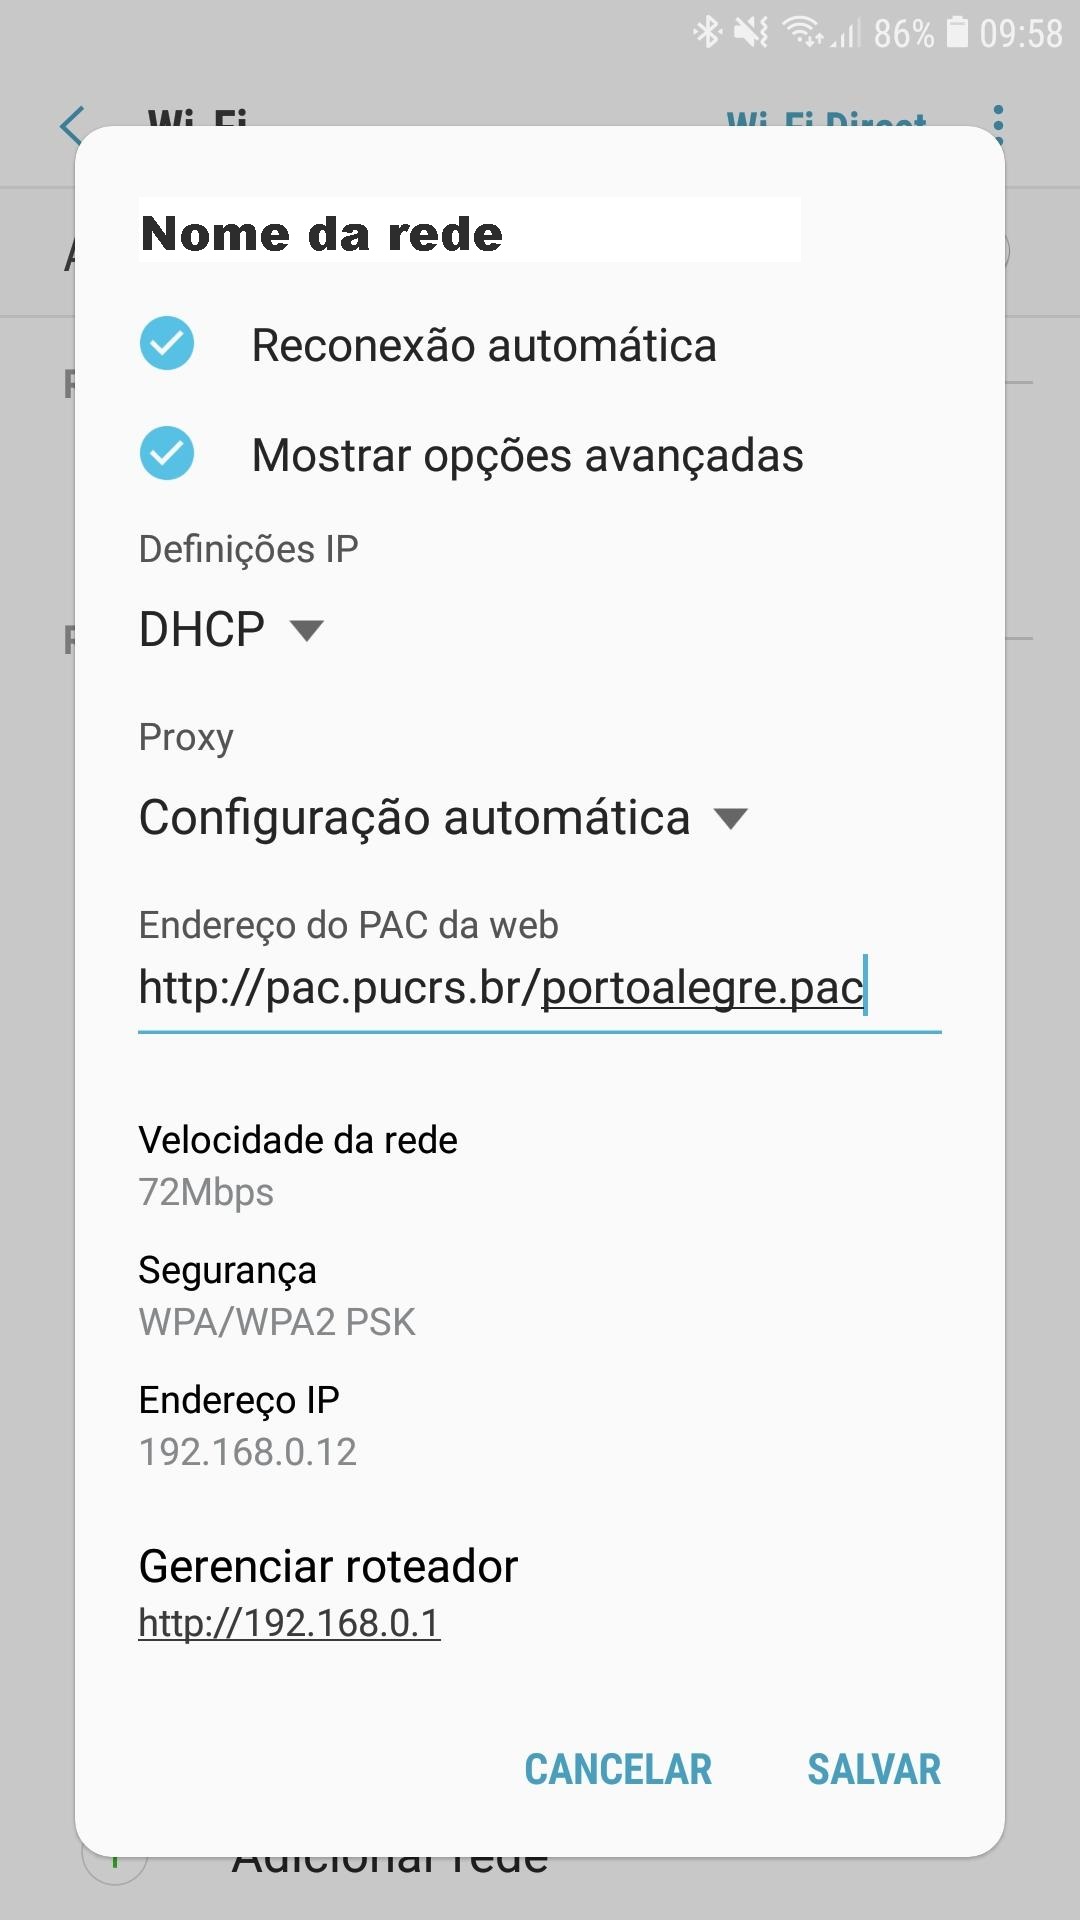 Tela de configuração do Android apresentado as configurações para o acesso remoto. No campo proxy está selecionada a opção configuração automática. No endereço do PAC está escrito http://pac.pucrs.br/portoalegre.pac